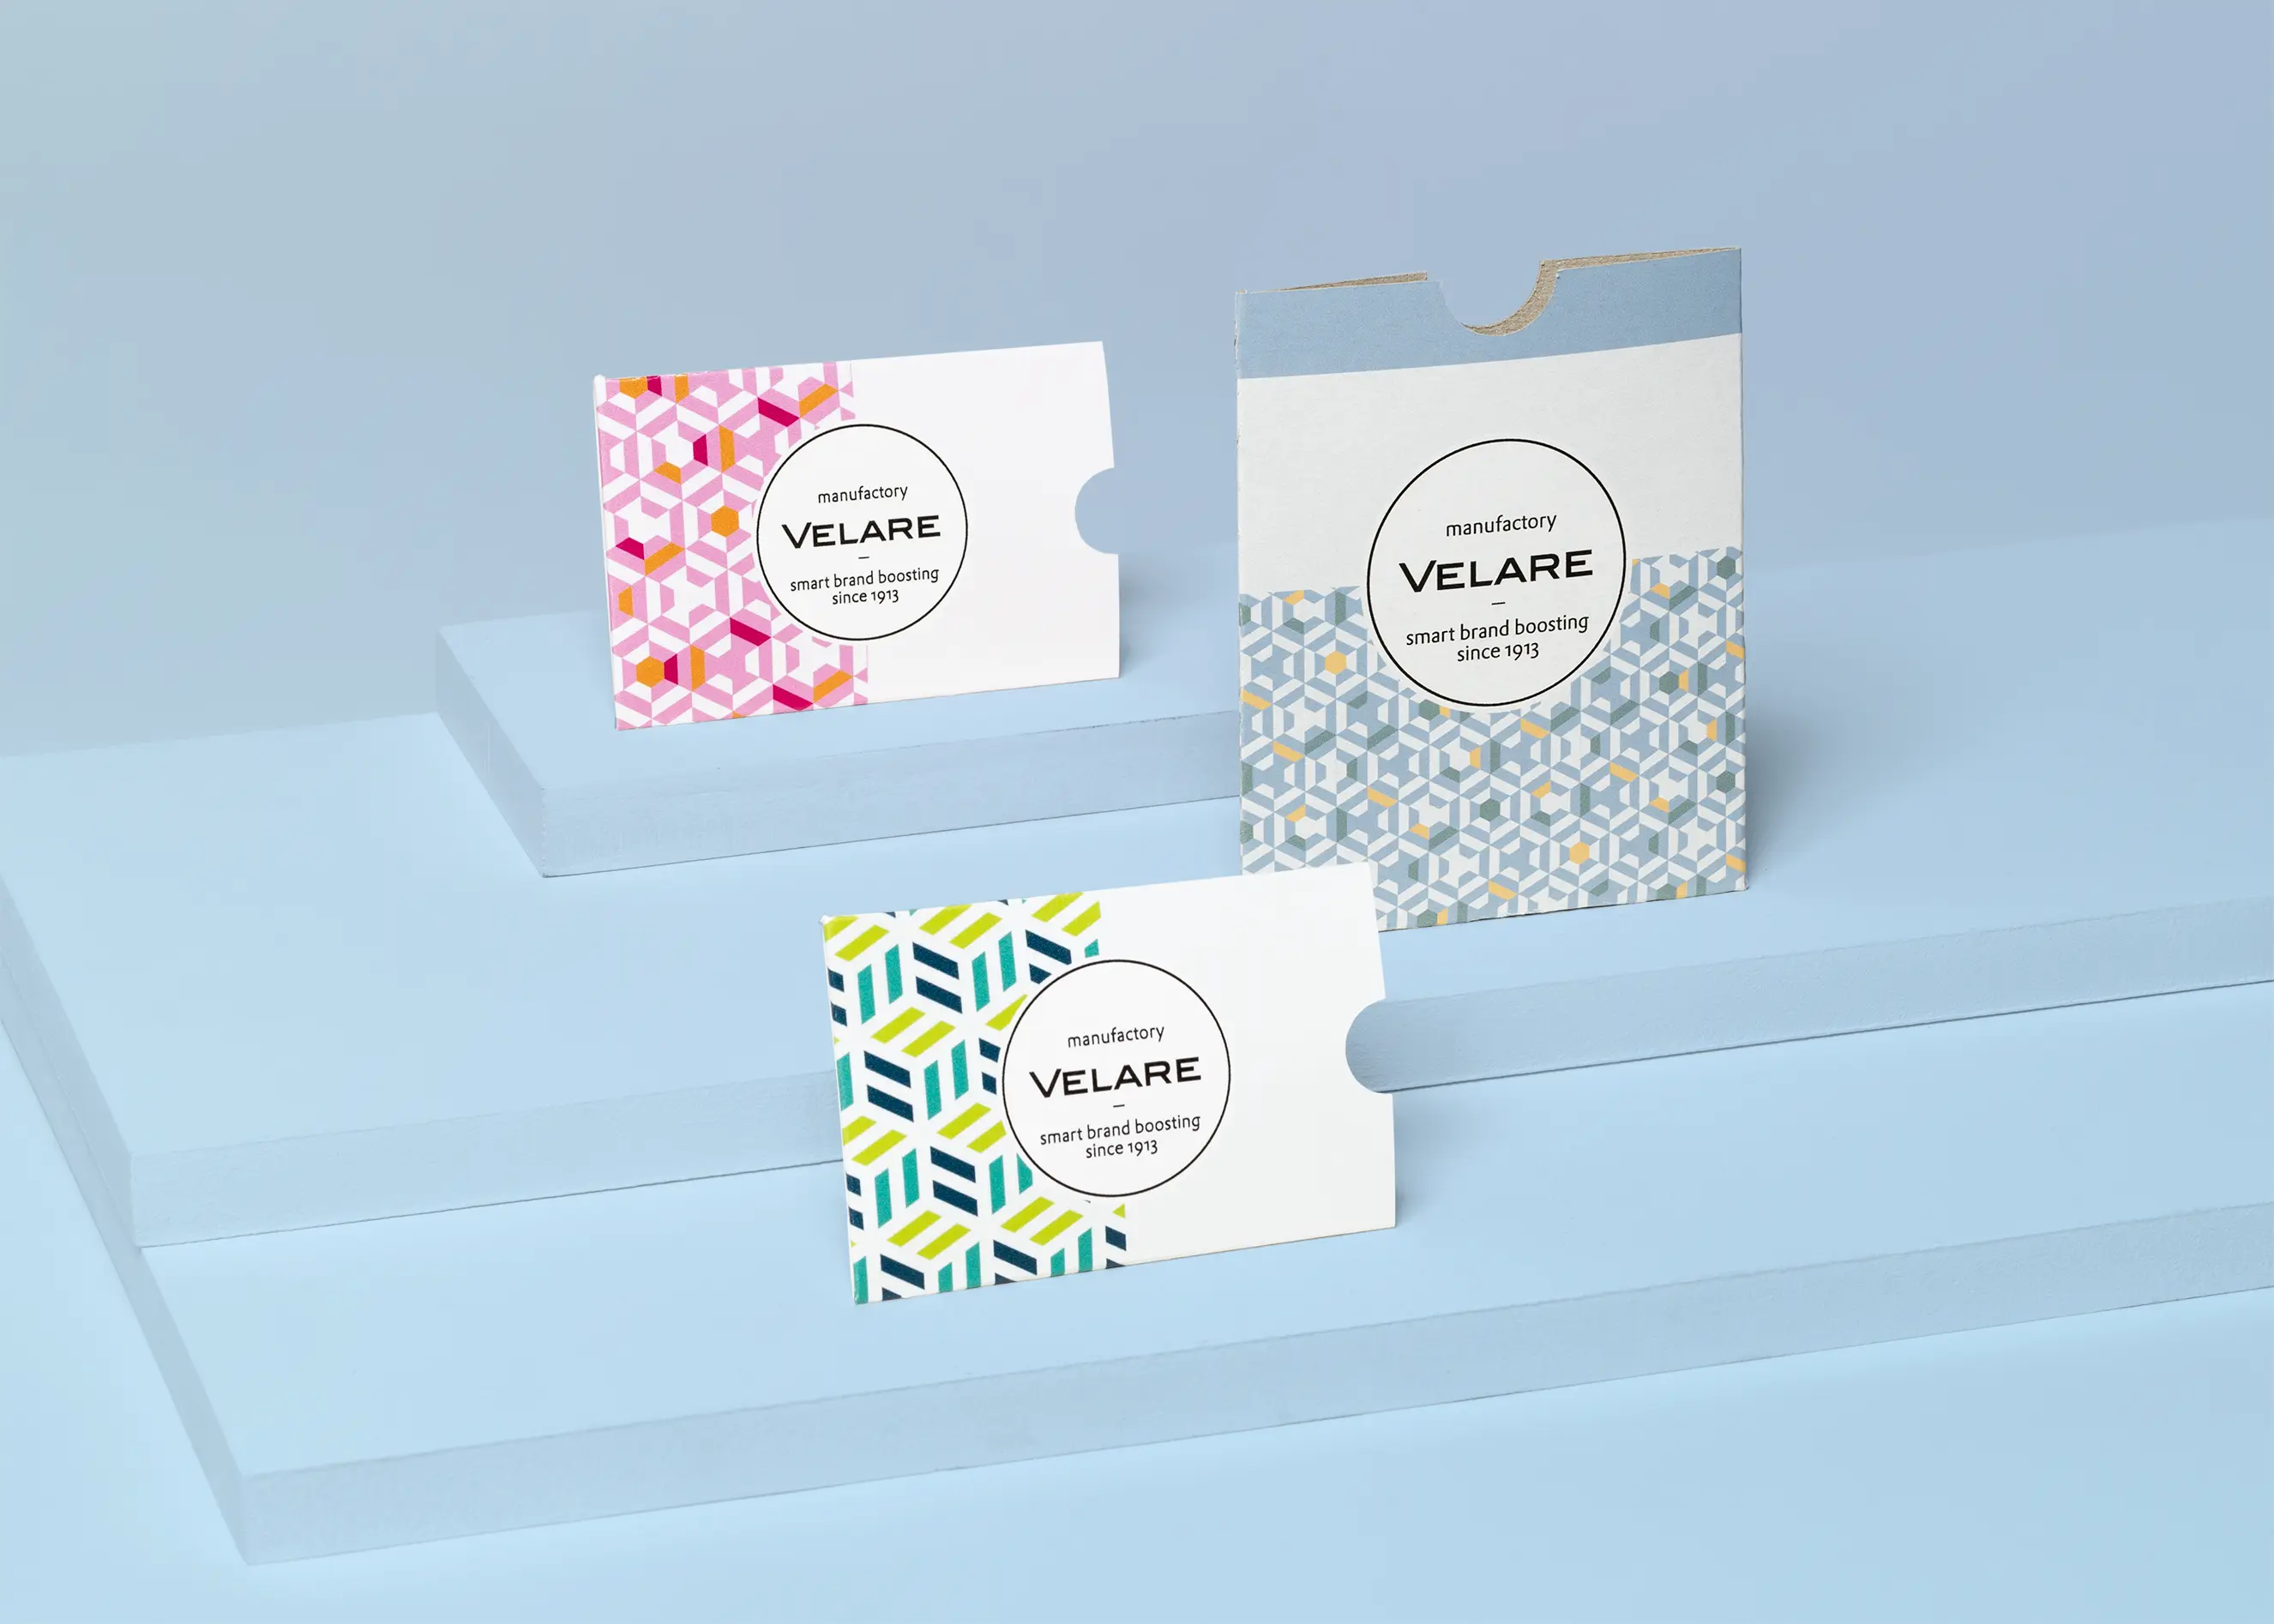 Kartenhülle ohne Verschluss, drei Verpackungen auf dem Podest, in drei unterschiedlichen Größen, blauer Hintergrund